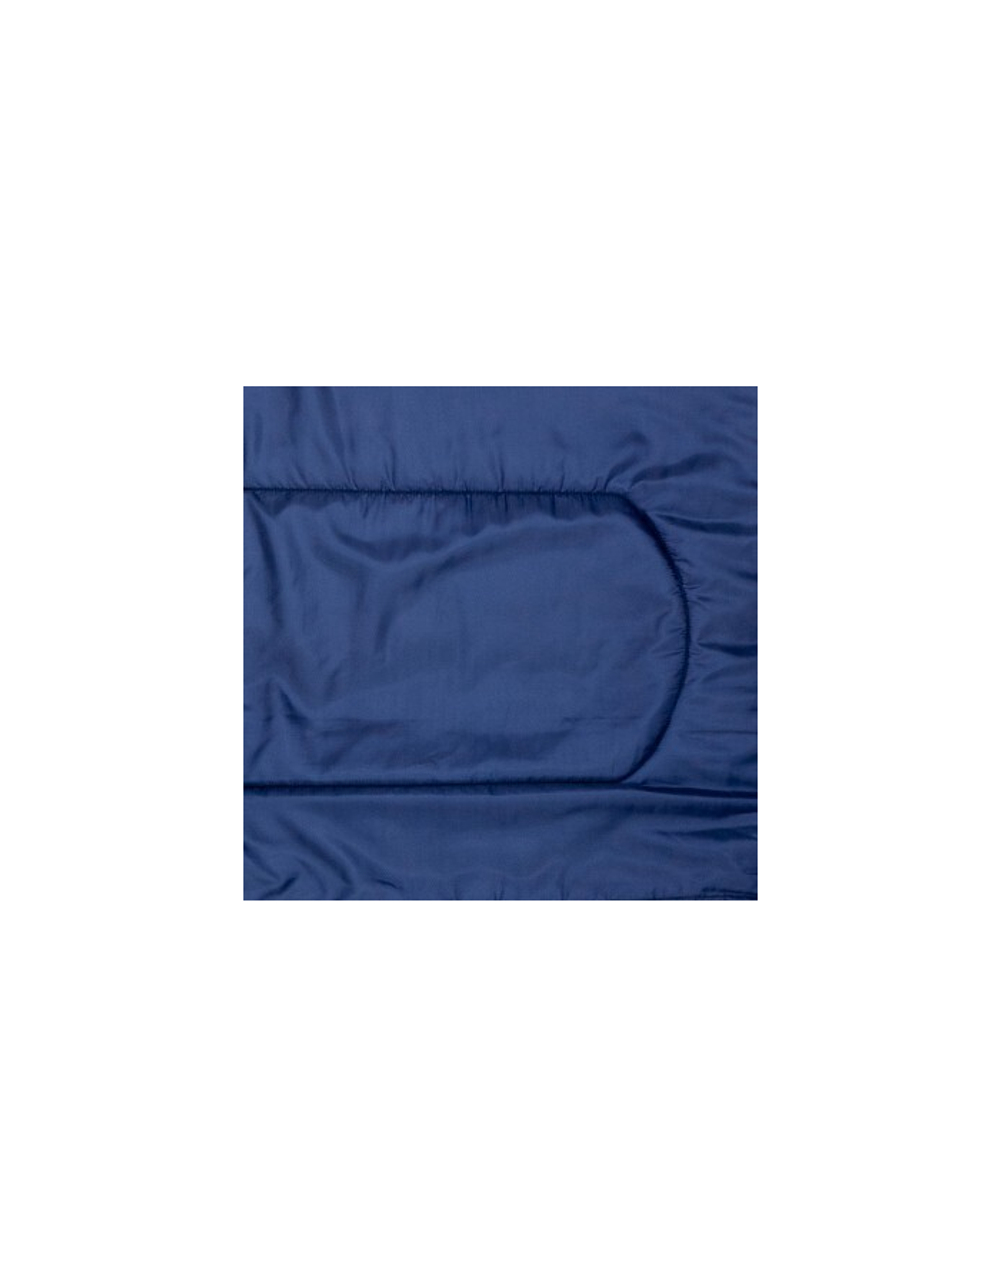 Мешок спальный Helios FUJI Wide 400 (220х90, синтепон, синий) (ТК: +13°C)